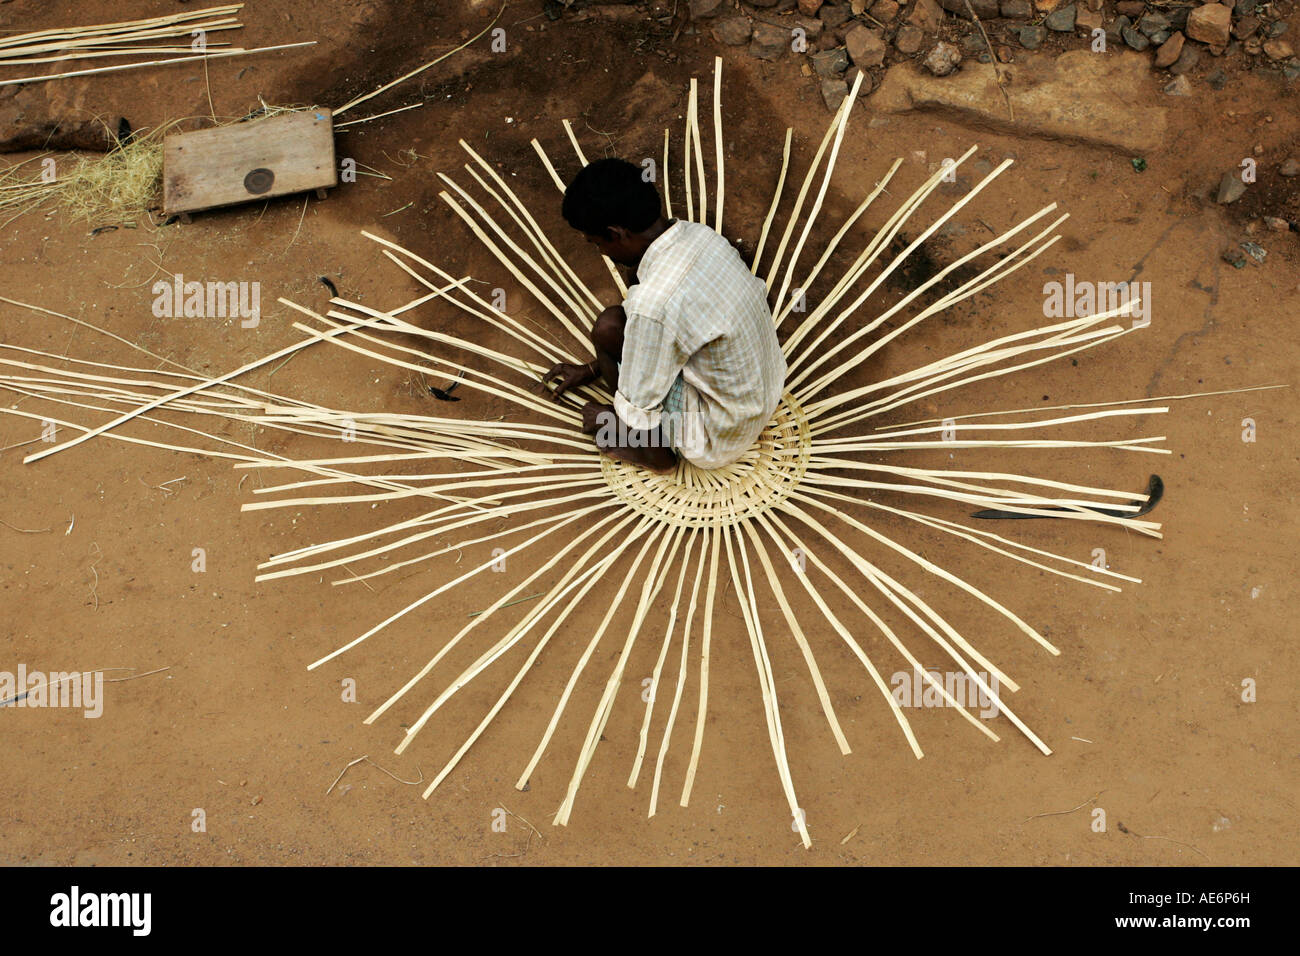 Indian man weaving basket Stock Photo